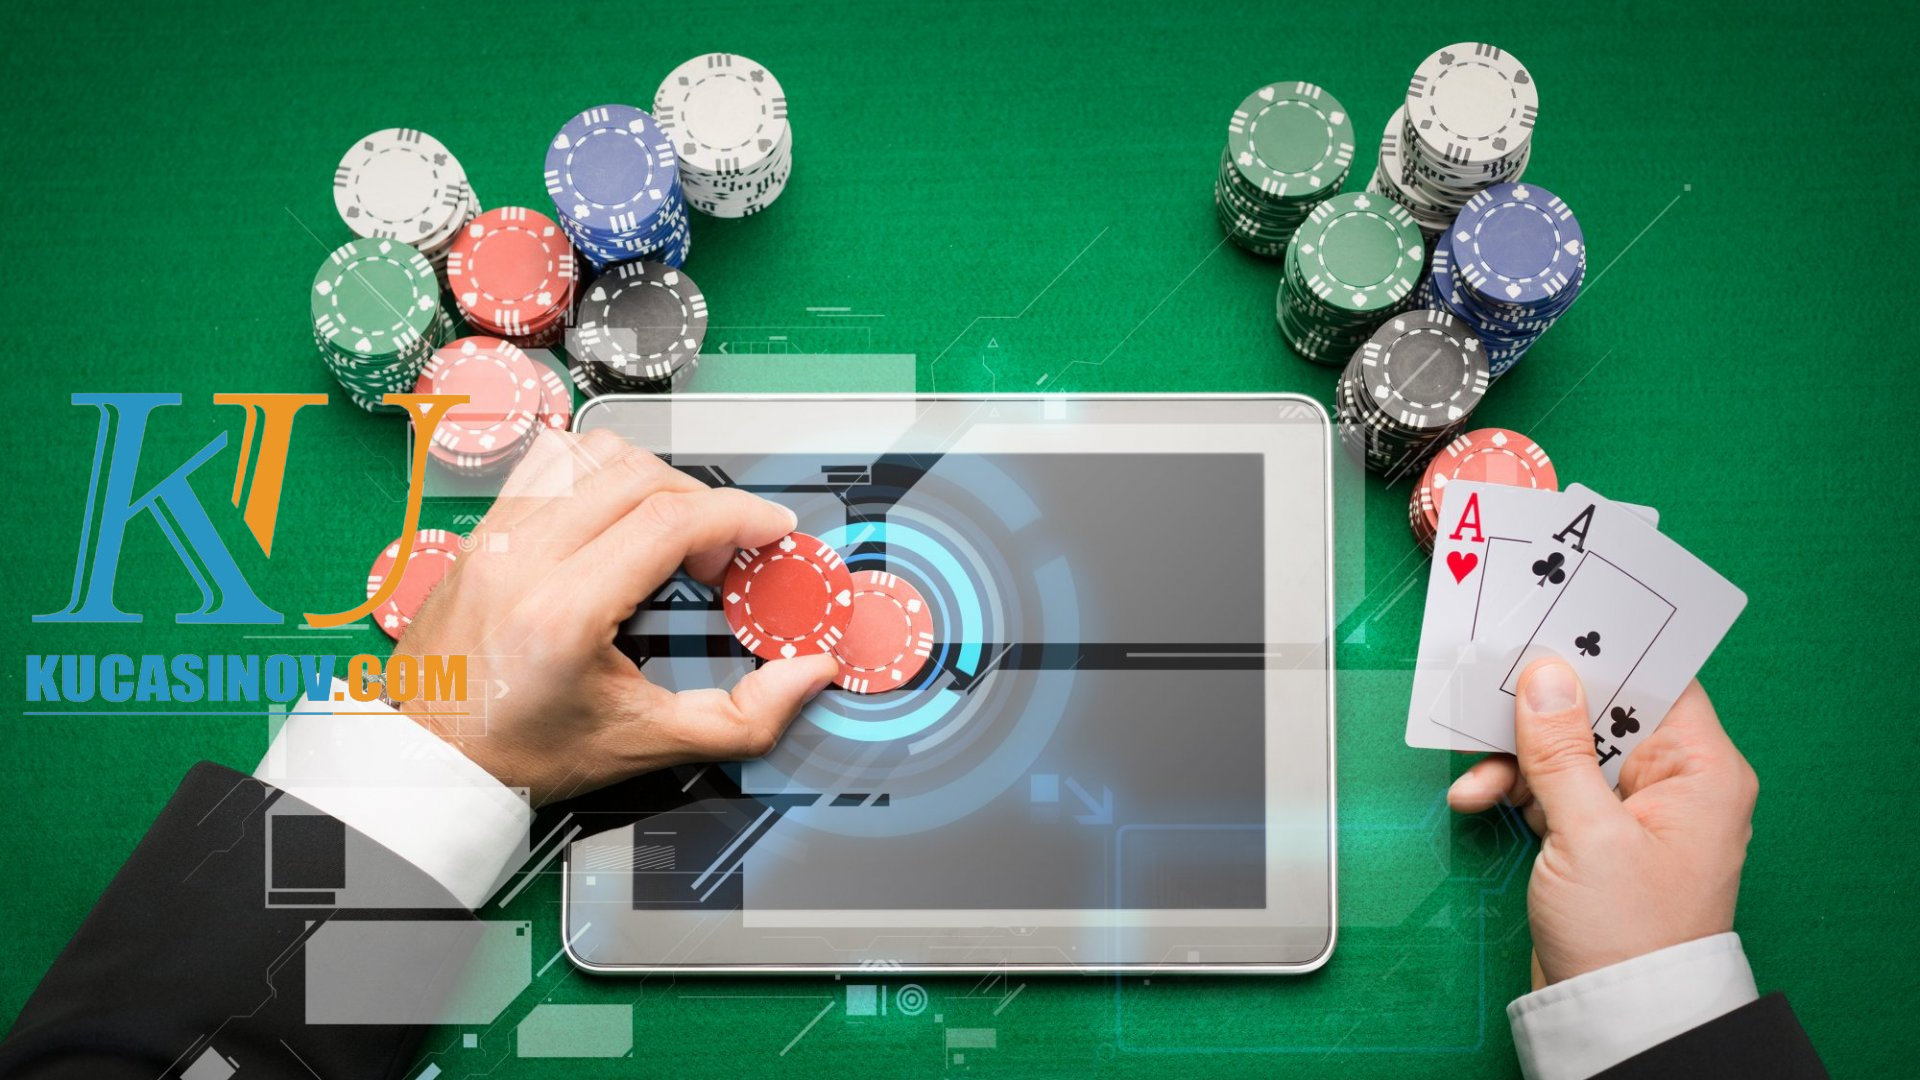 Kiếm tiền từ cờ bạc online là gì? 1 số lời khuyên hay